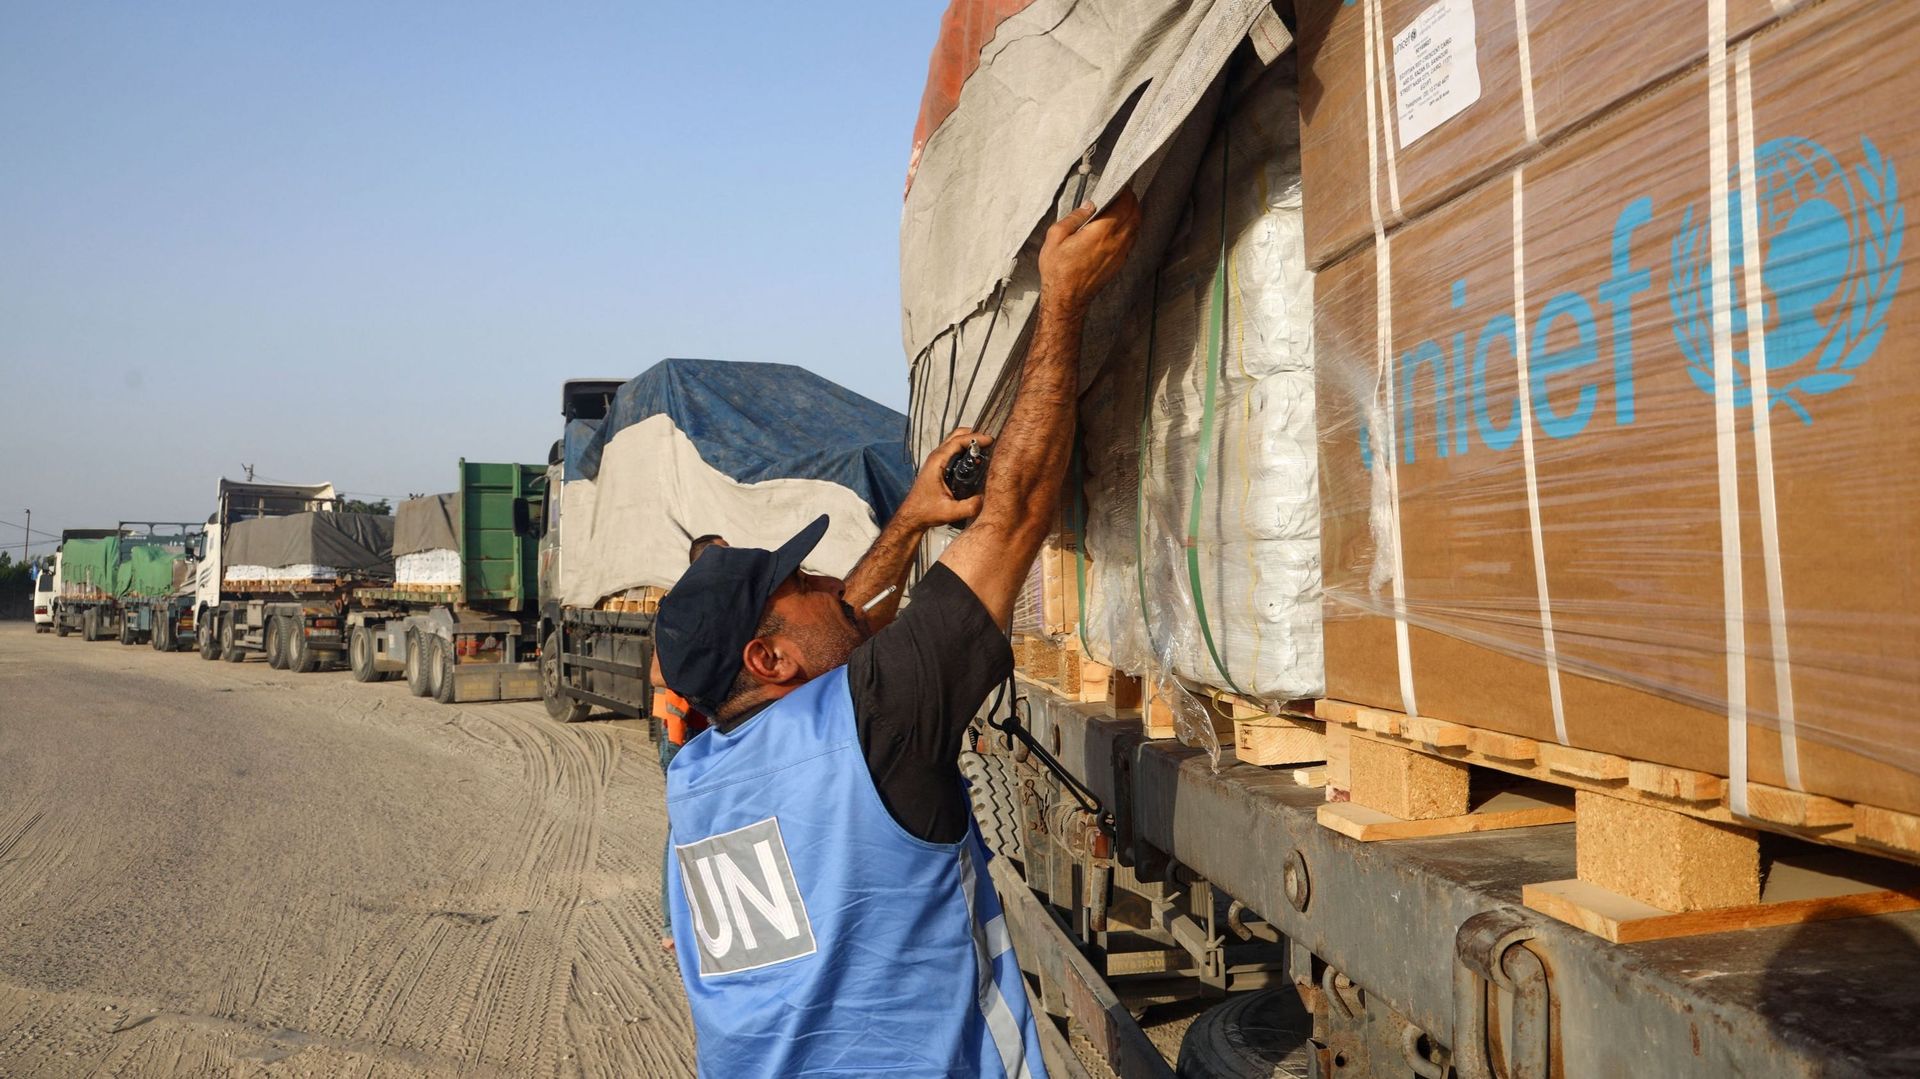 Guterres : Une offensive totale israélienne contre Rafah mettrait le "dernier clou dans le cercueil" des aides de l'ONU